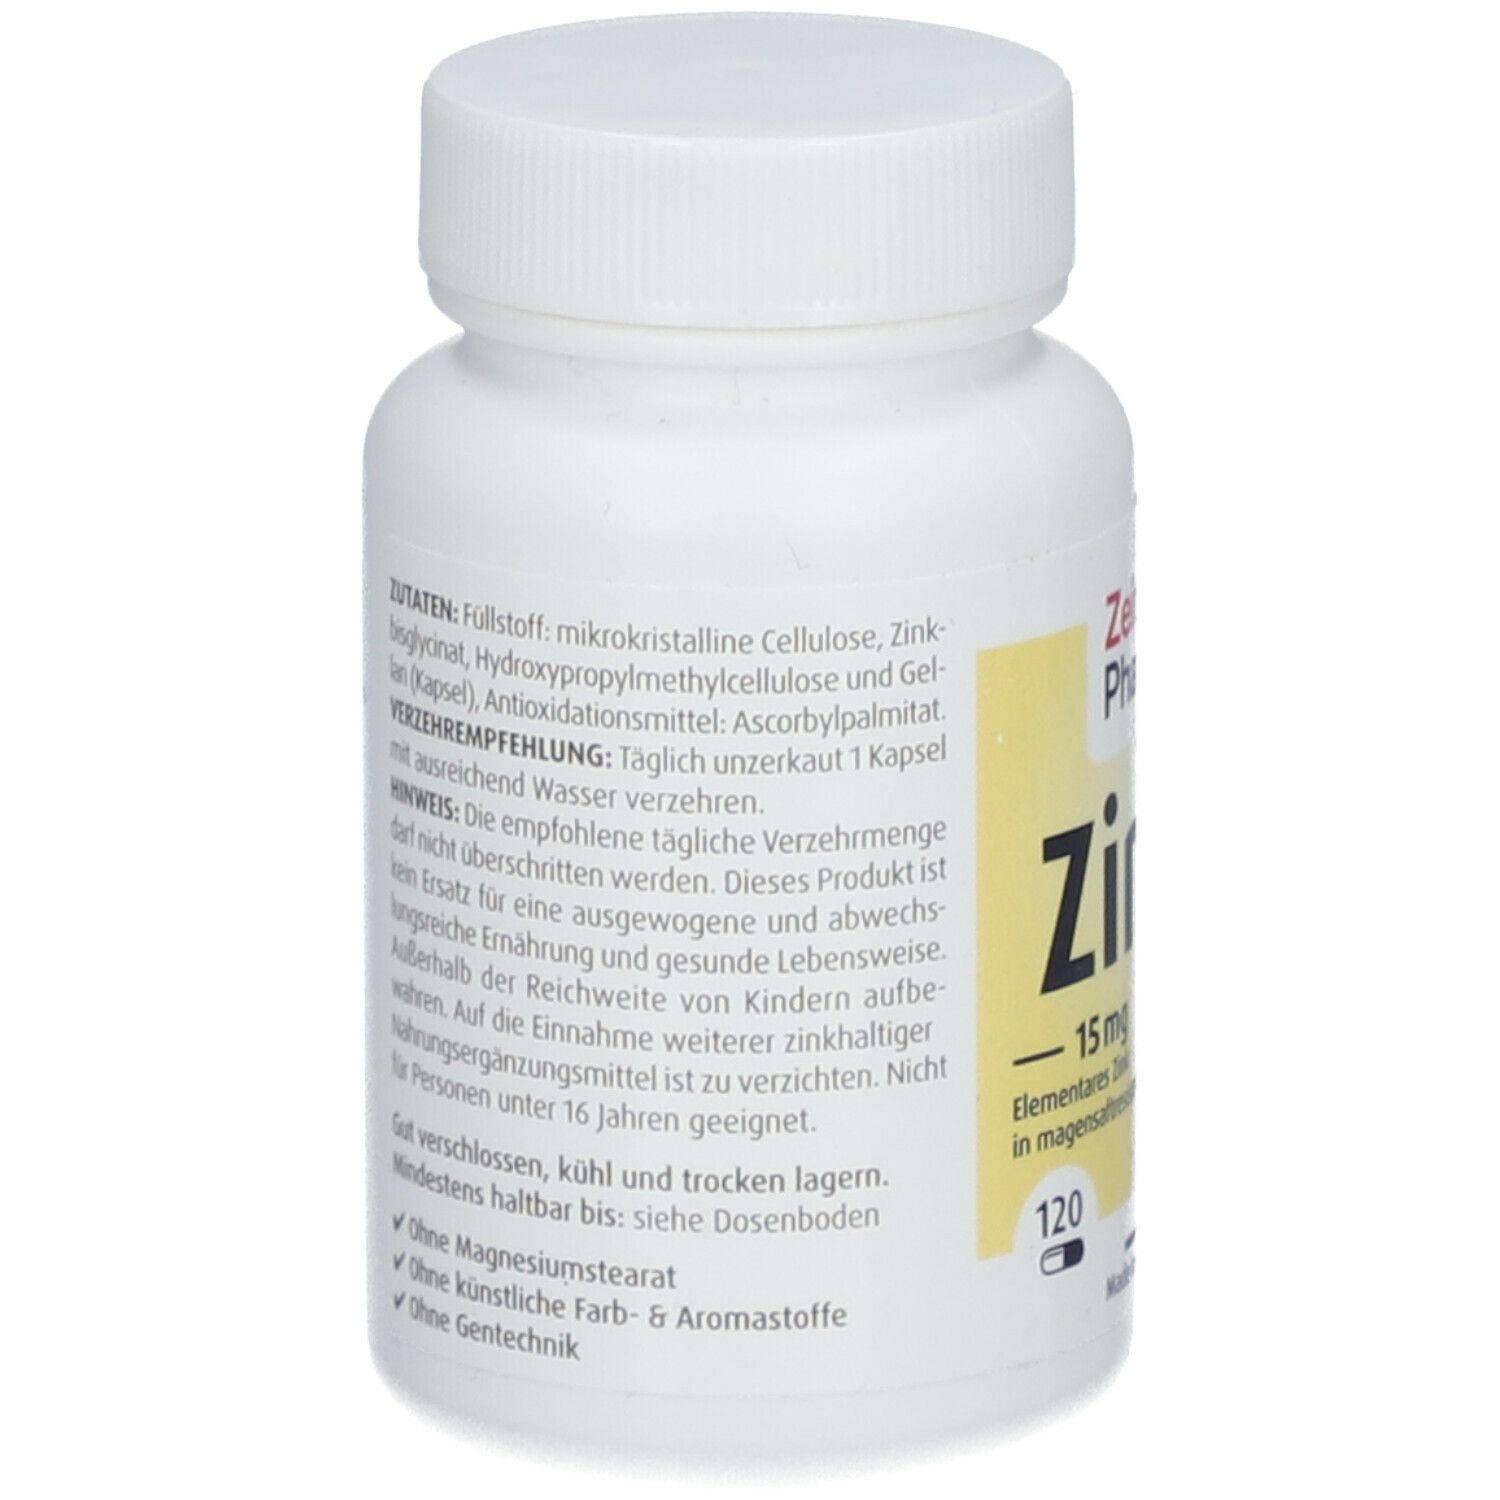 ZeinPharma® Zink Kapseln Chelat 15 mg